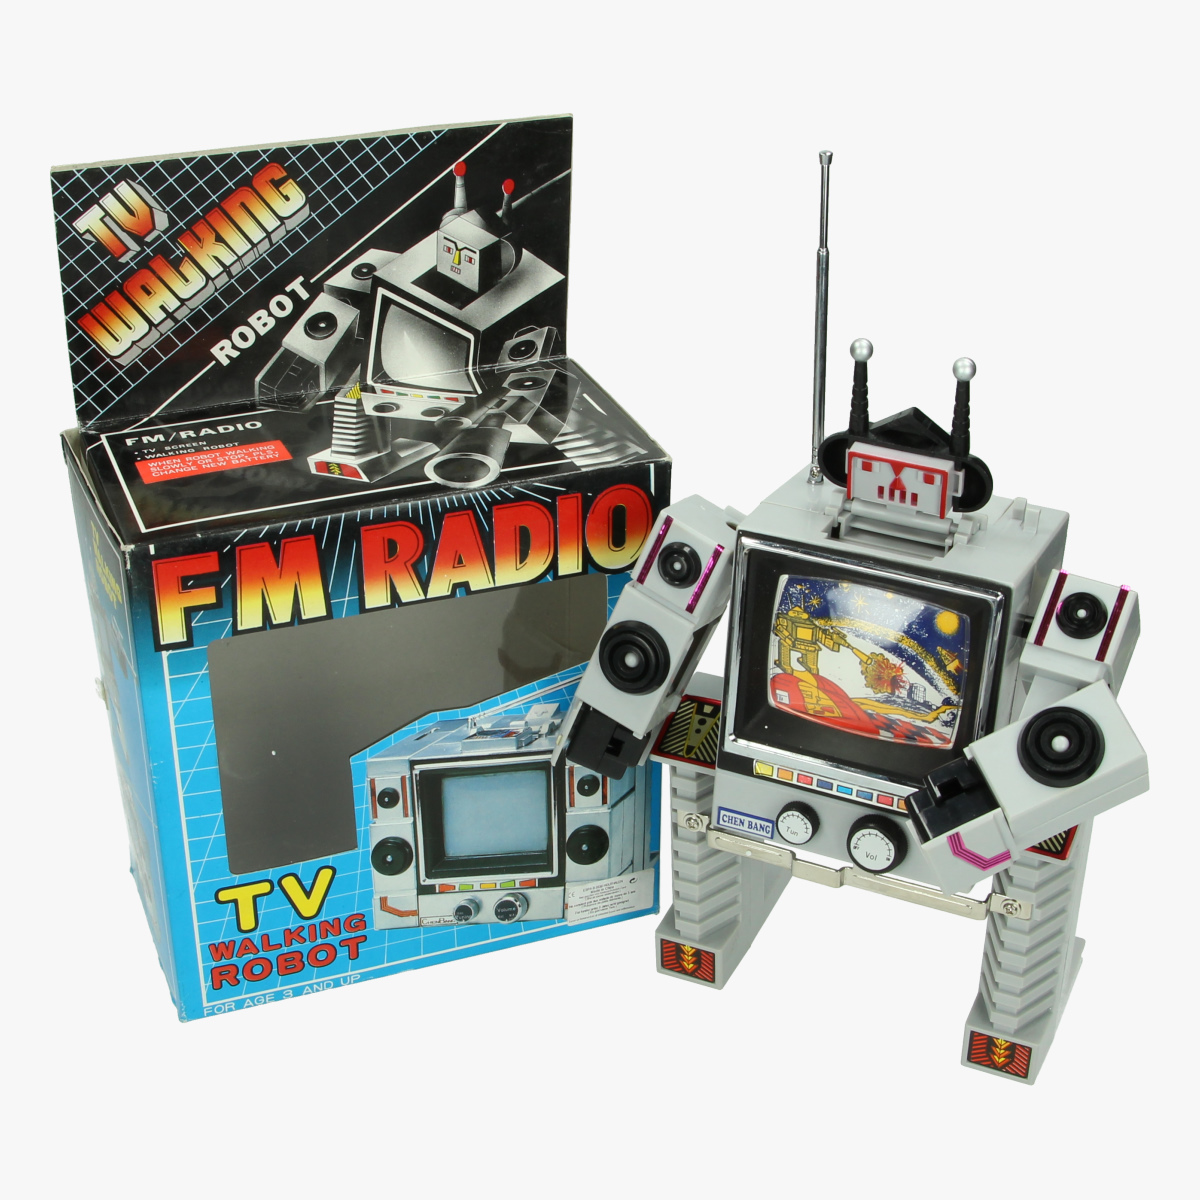 Afbeeldingen van Tv Walking Robot- FM Radio